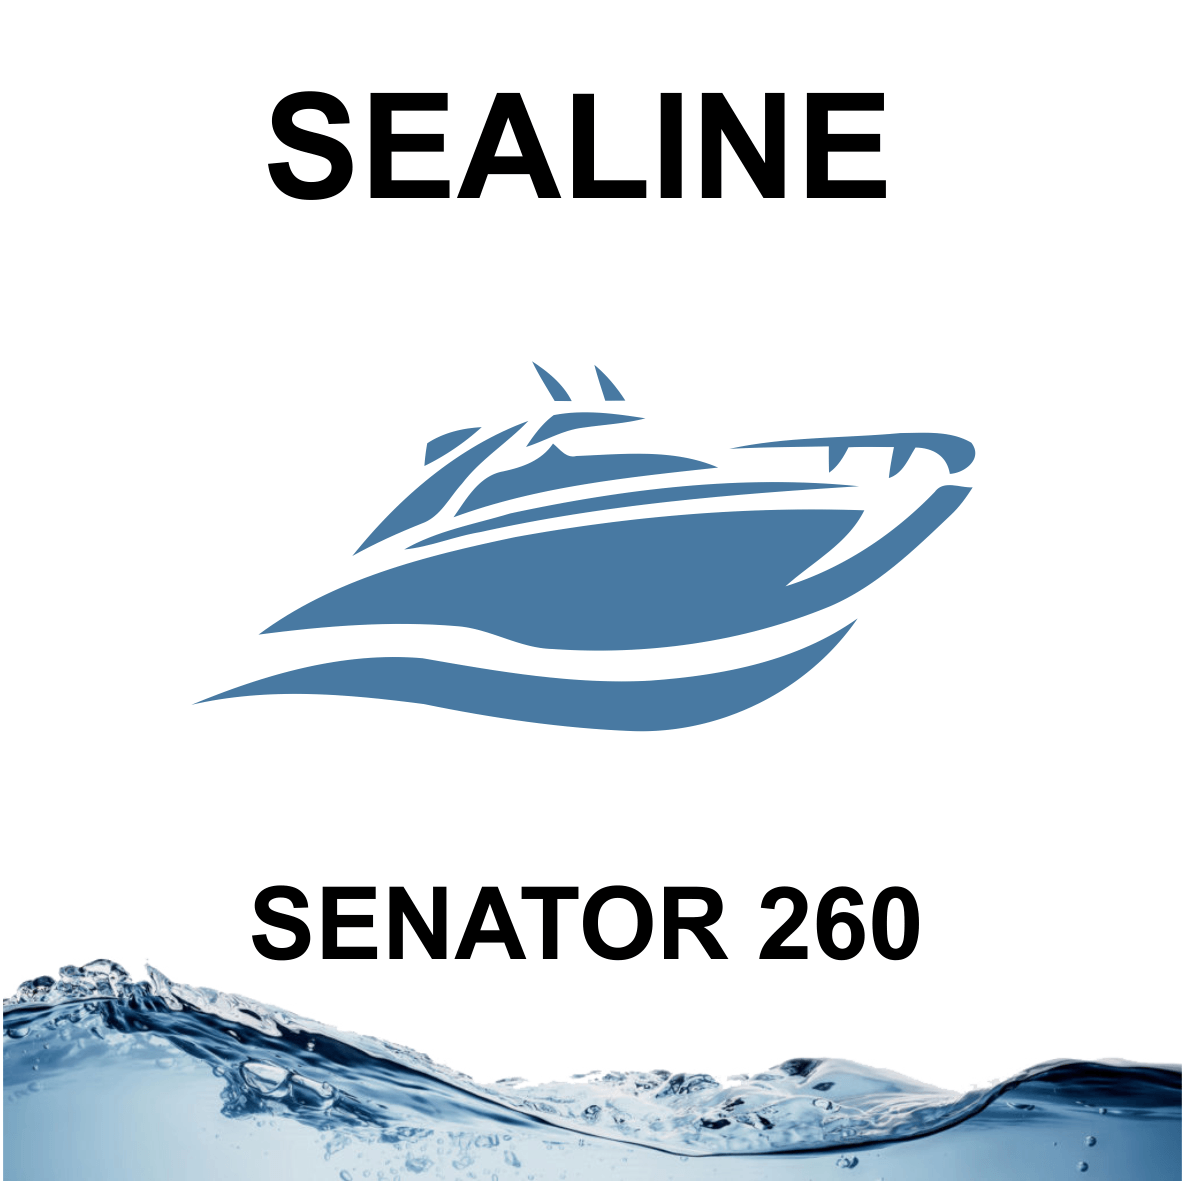 Sealine Senator 260